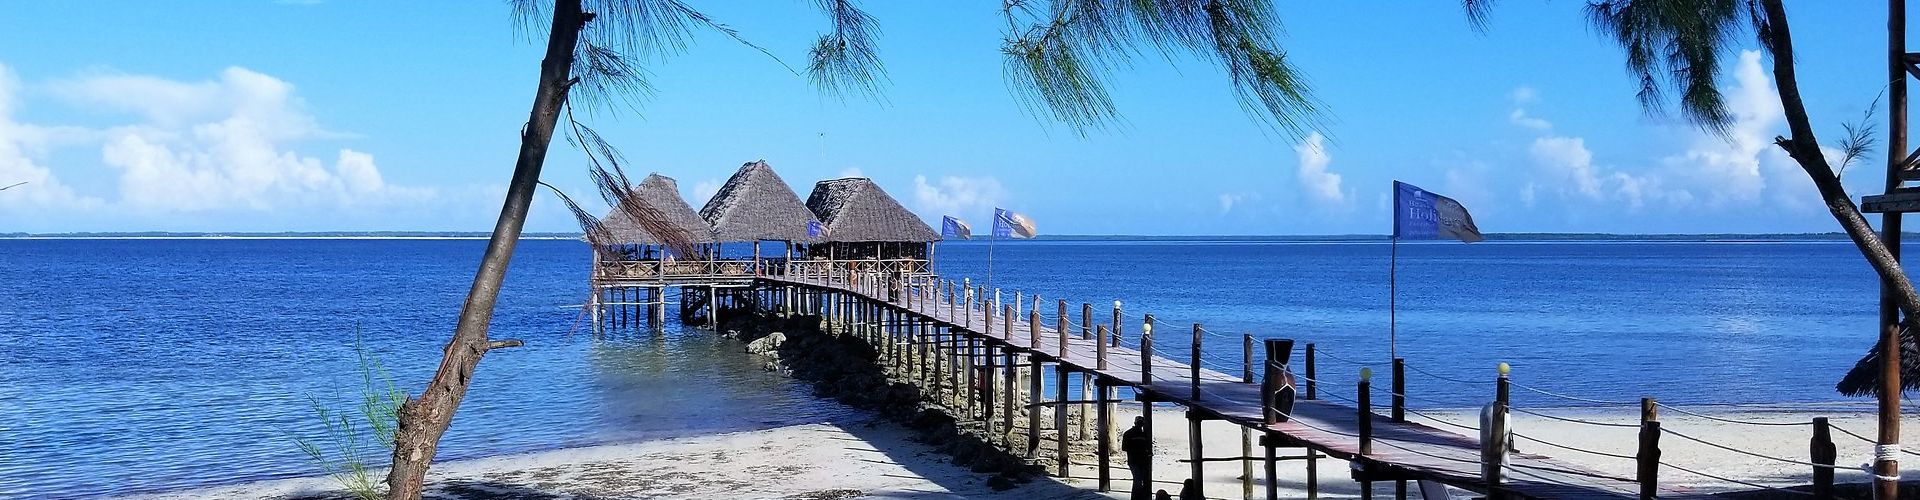 Détendez-vous dans un bel hôtel de plage après votre safari poussiéreux grâce à nos forfaits safari et vacances à Zanzibar.